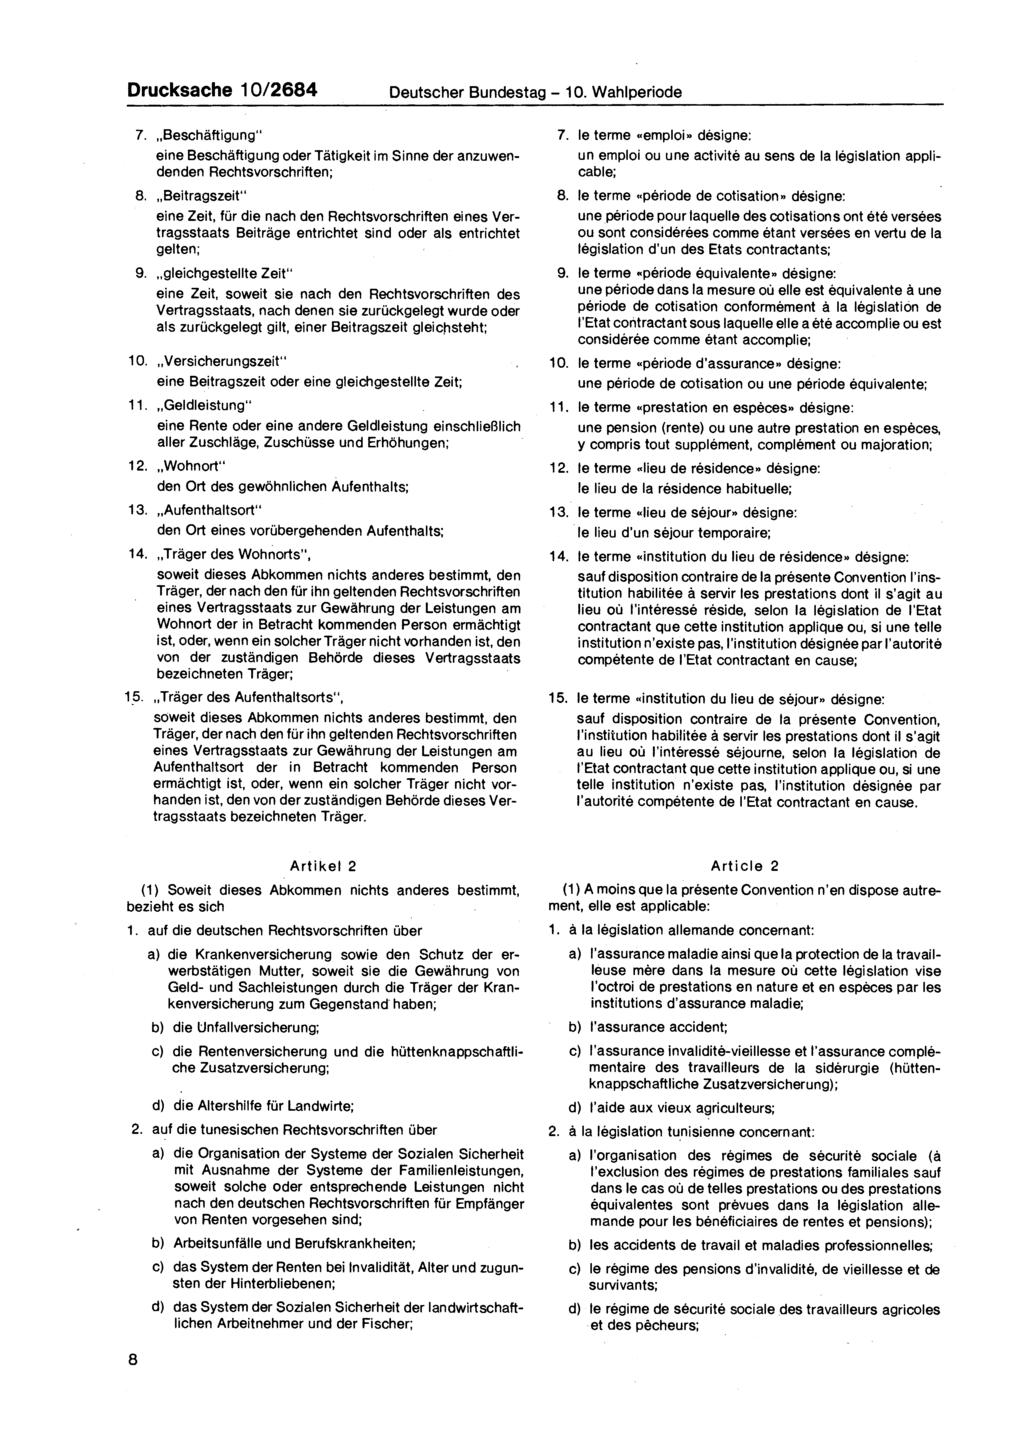 Drucksache 10/2684 Deutscher Bundestag - 10. Wahlperiode 7. Beschäftigung" eine Beschäftigung oder Tätigkeit im Sinne der anzuwendenden Rechtsvorschriften; 8.